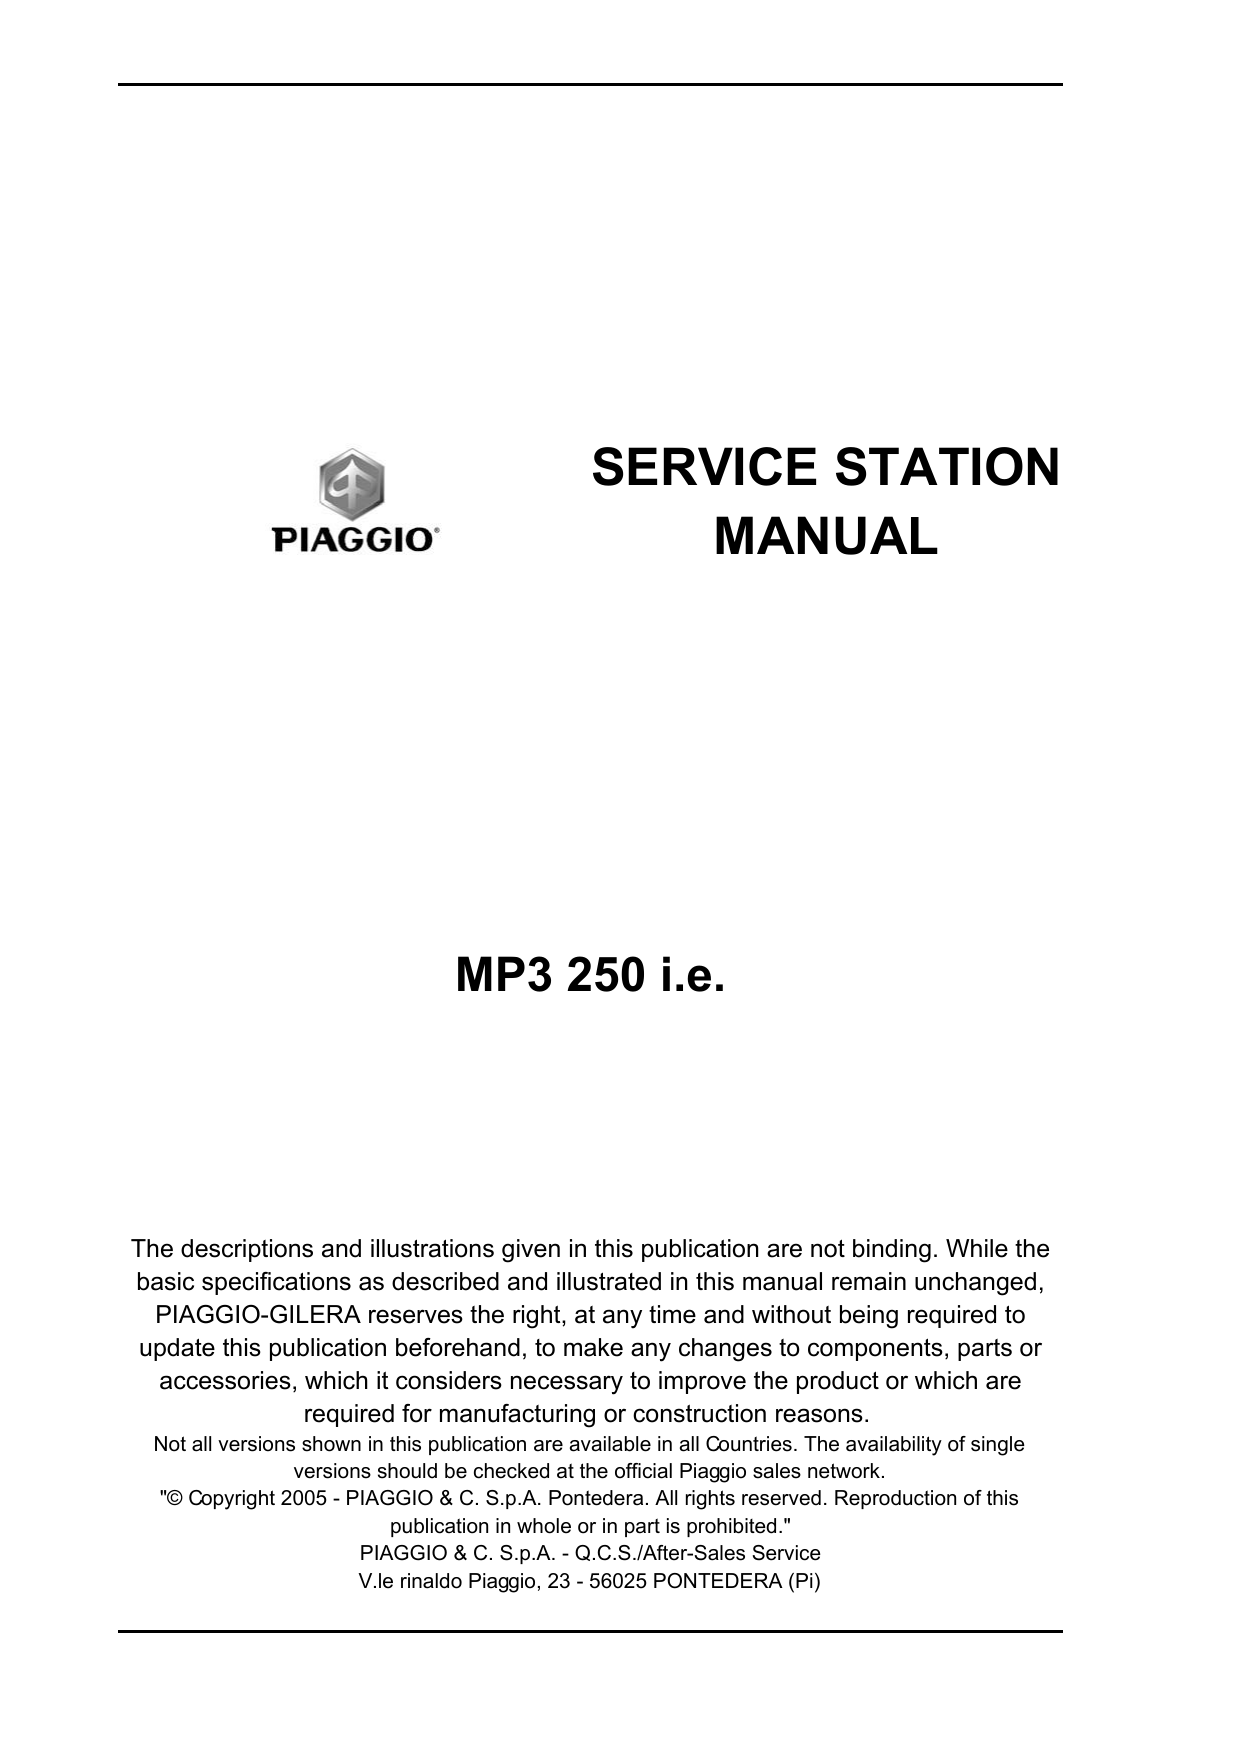 Piaggio MP3 250 IE service manual Preview image 2